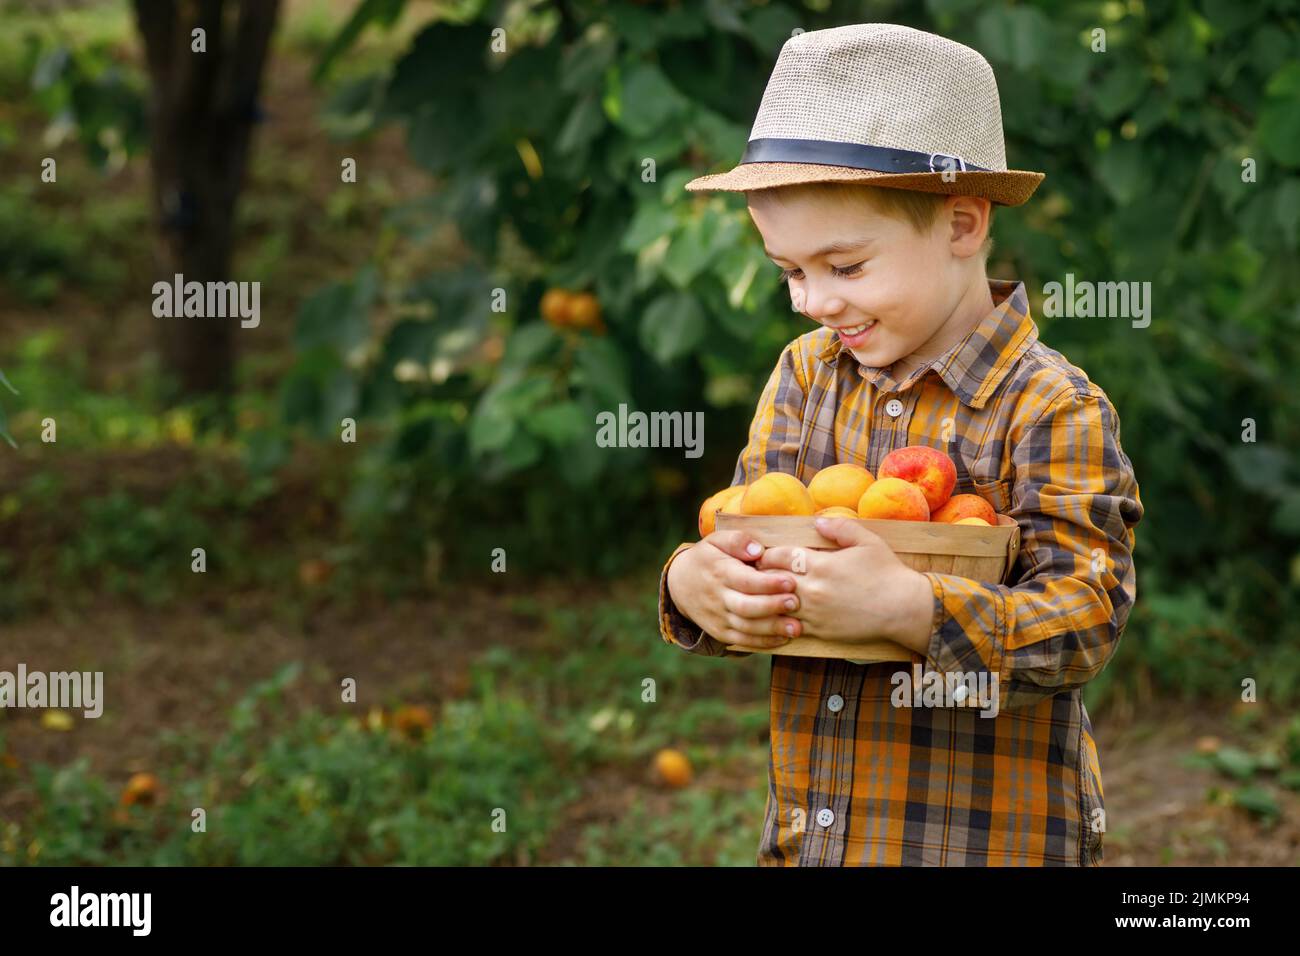 bambino sorridente che tiene il cestino con le albicocche Foto Stock